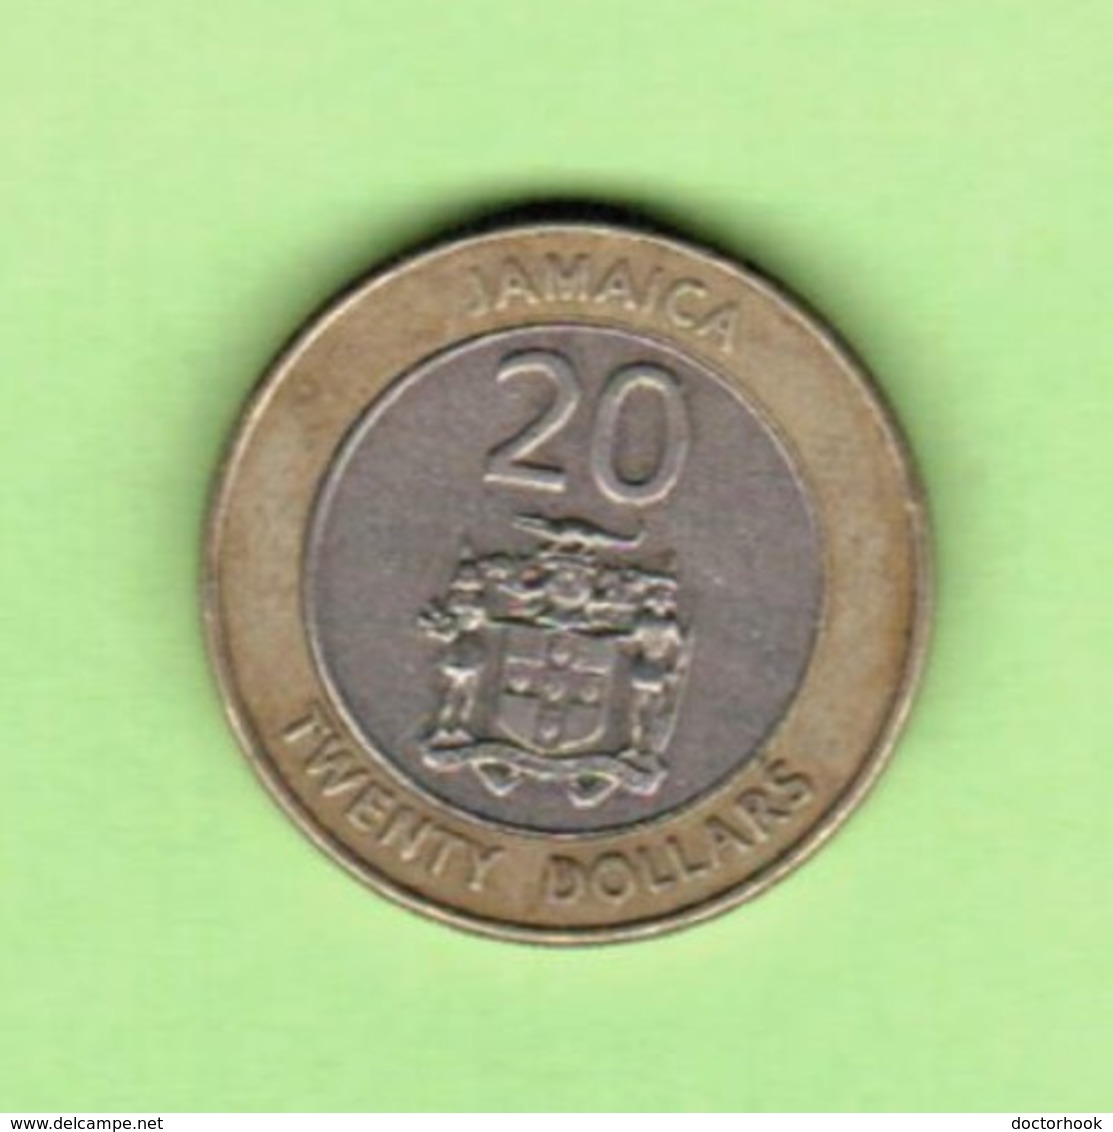 JAMAICA   $20.00 DOLLARS 2001  (KM # 182) #5205 - Jamaique